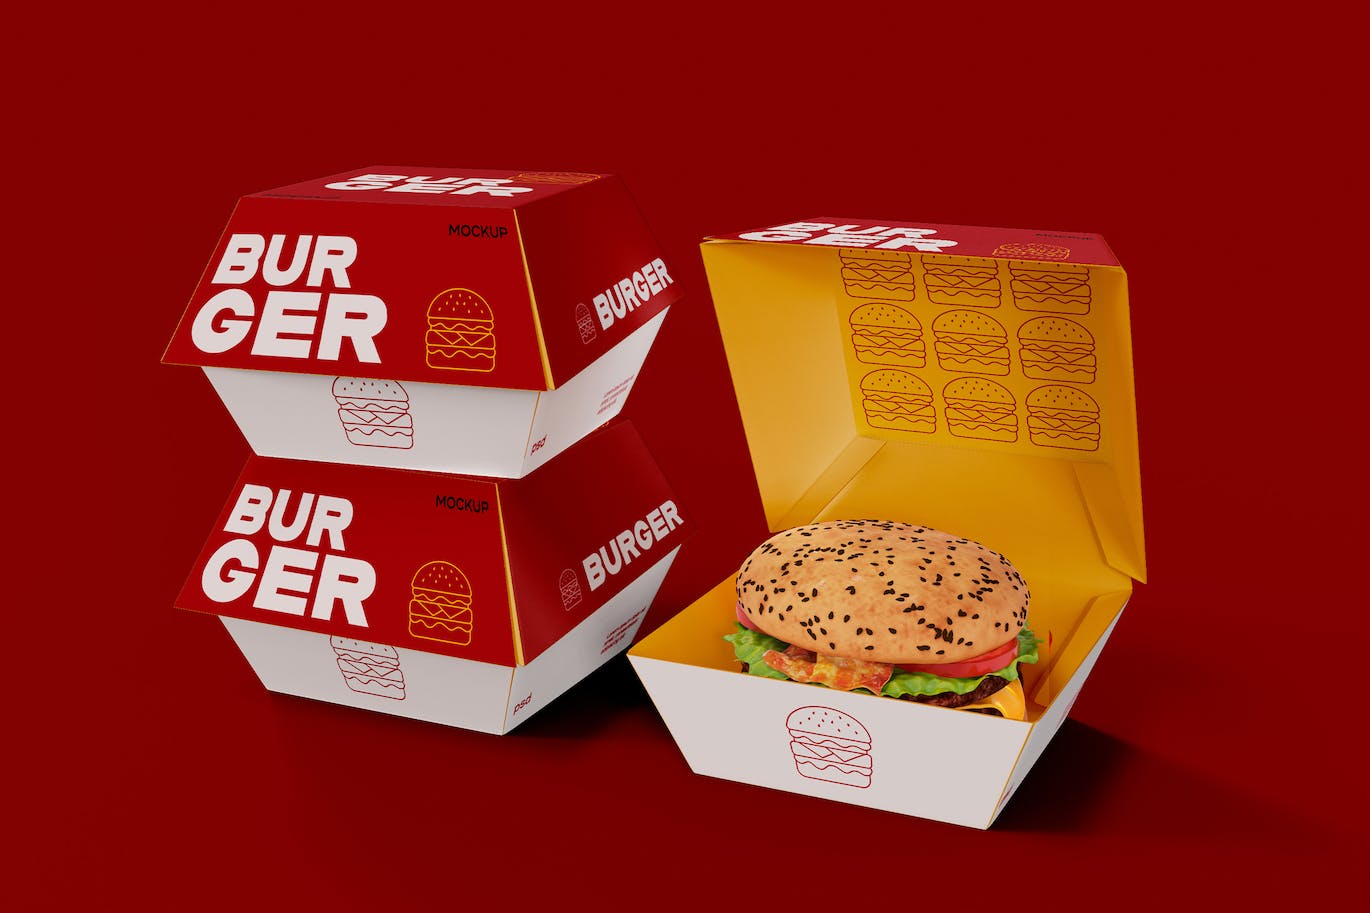 汉堡盒包装设计样机图 Fast Food Mockup 样机素材 第1张